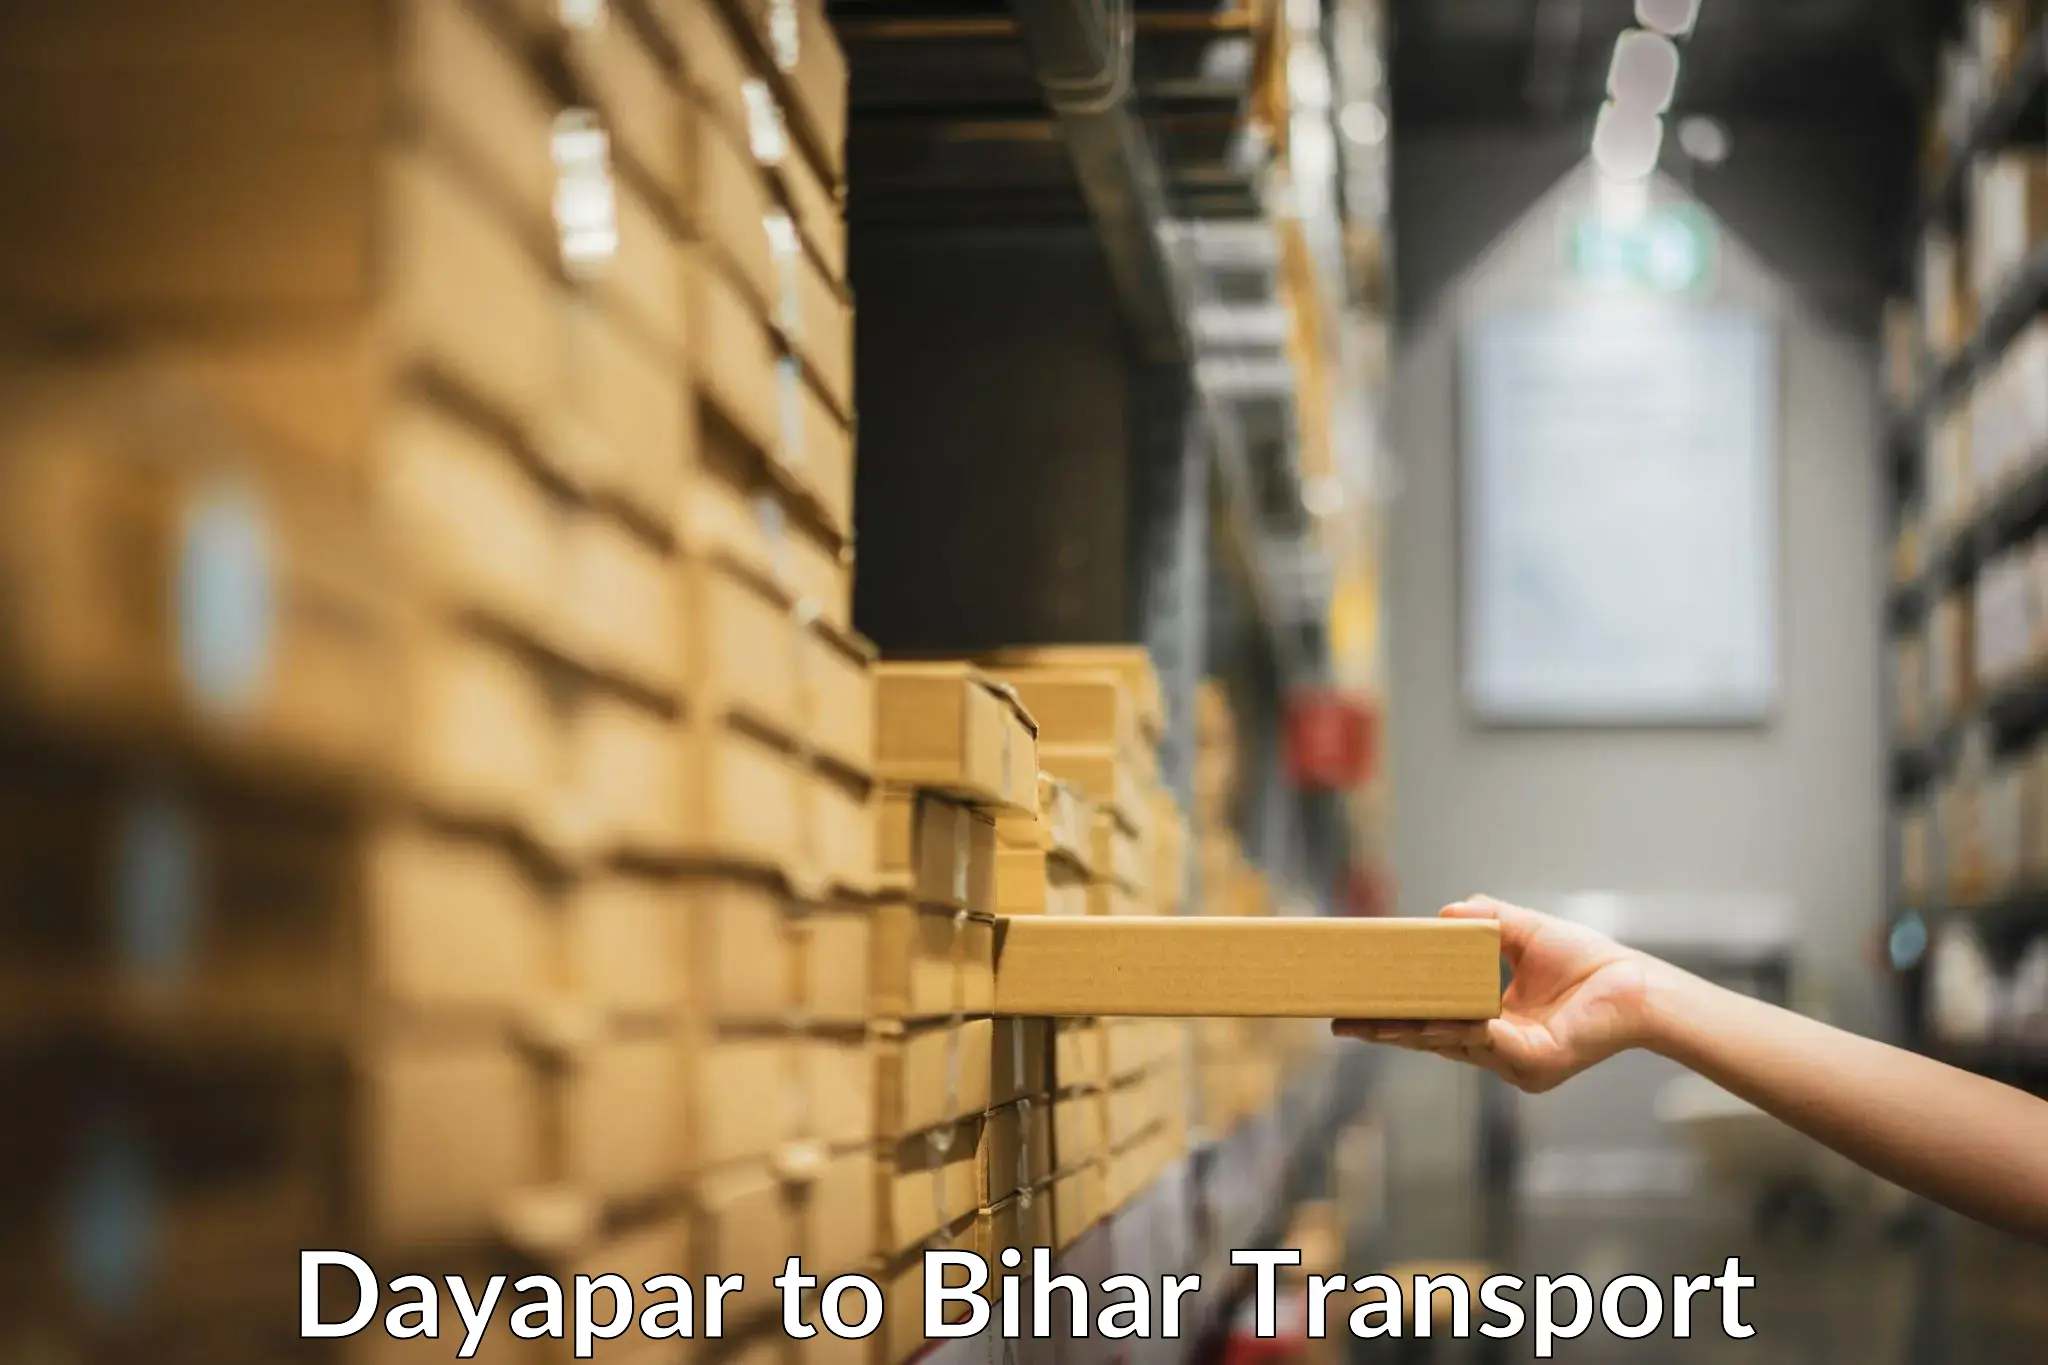 Bike shipping service Dayapar to Jaynagar